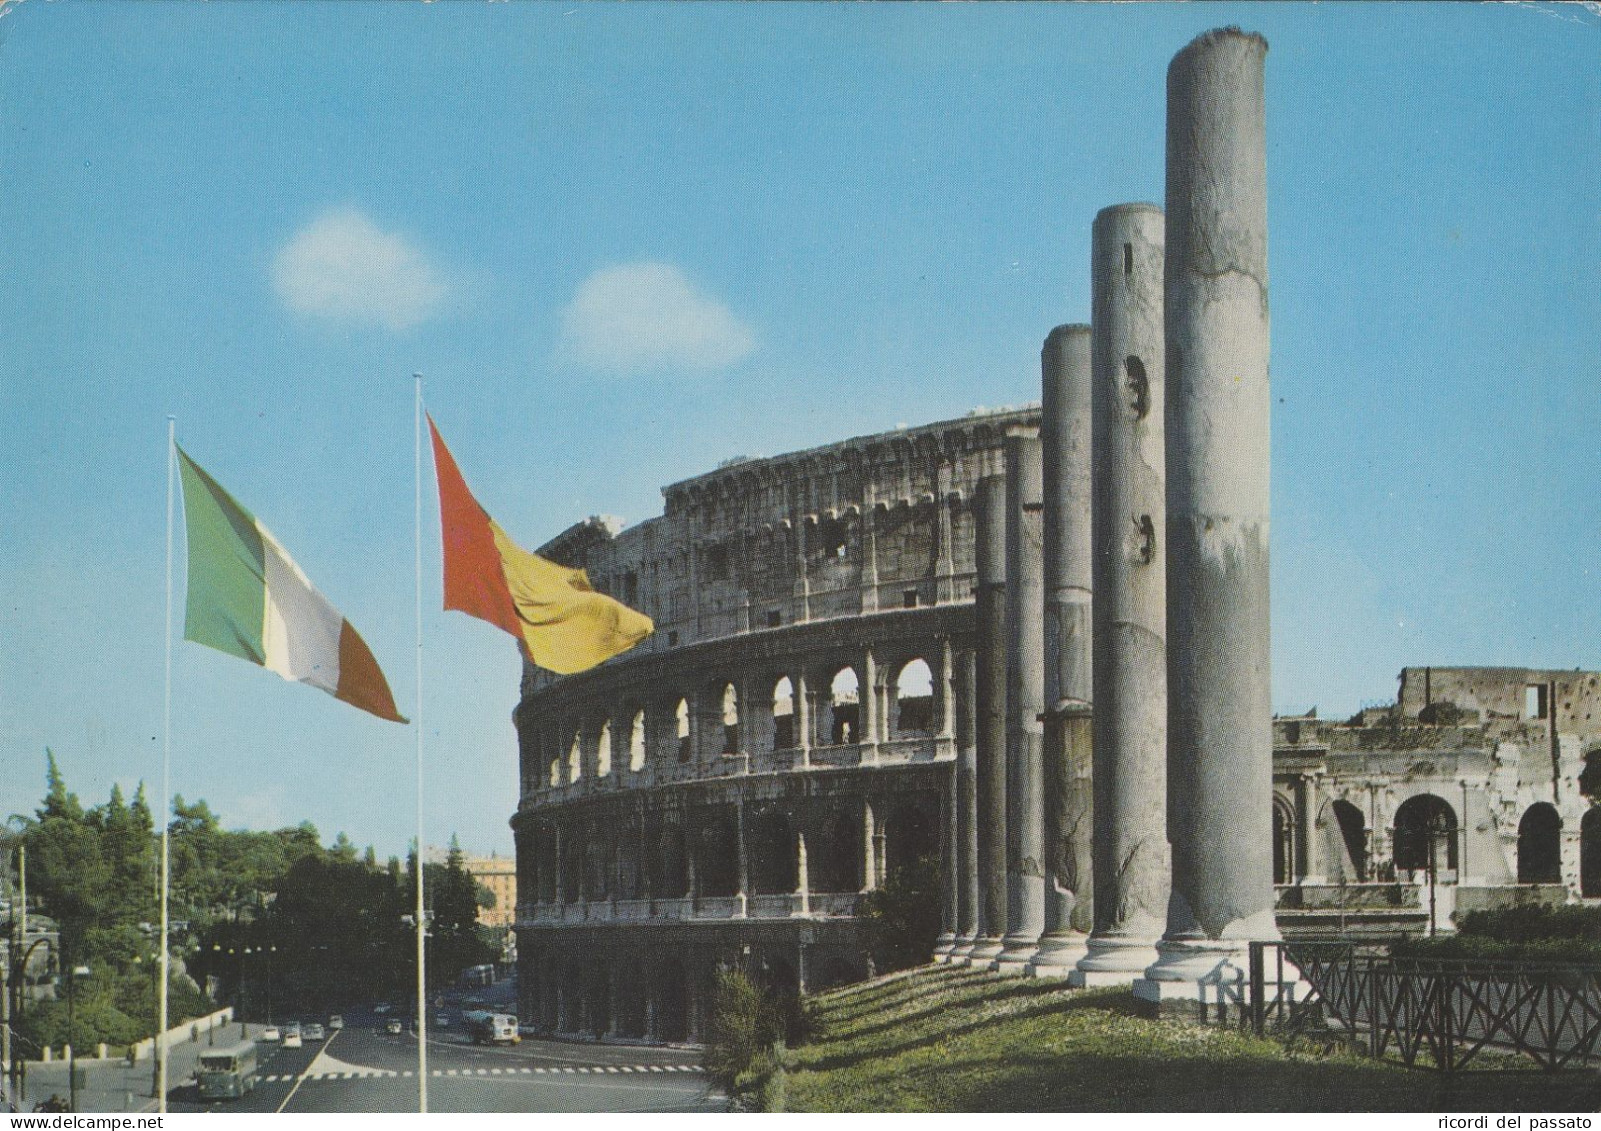 Cartolina Roma - Il Colosseo - Coliseo